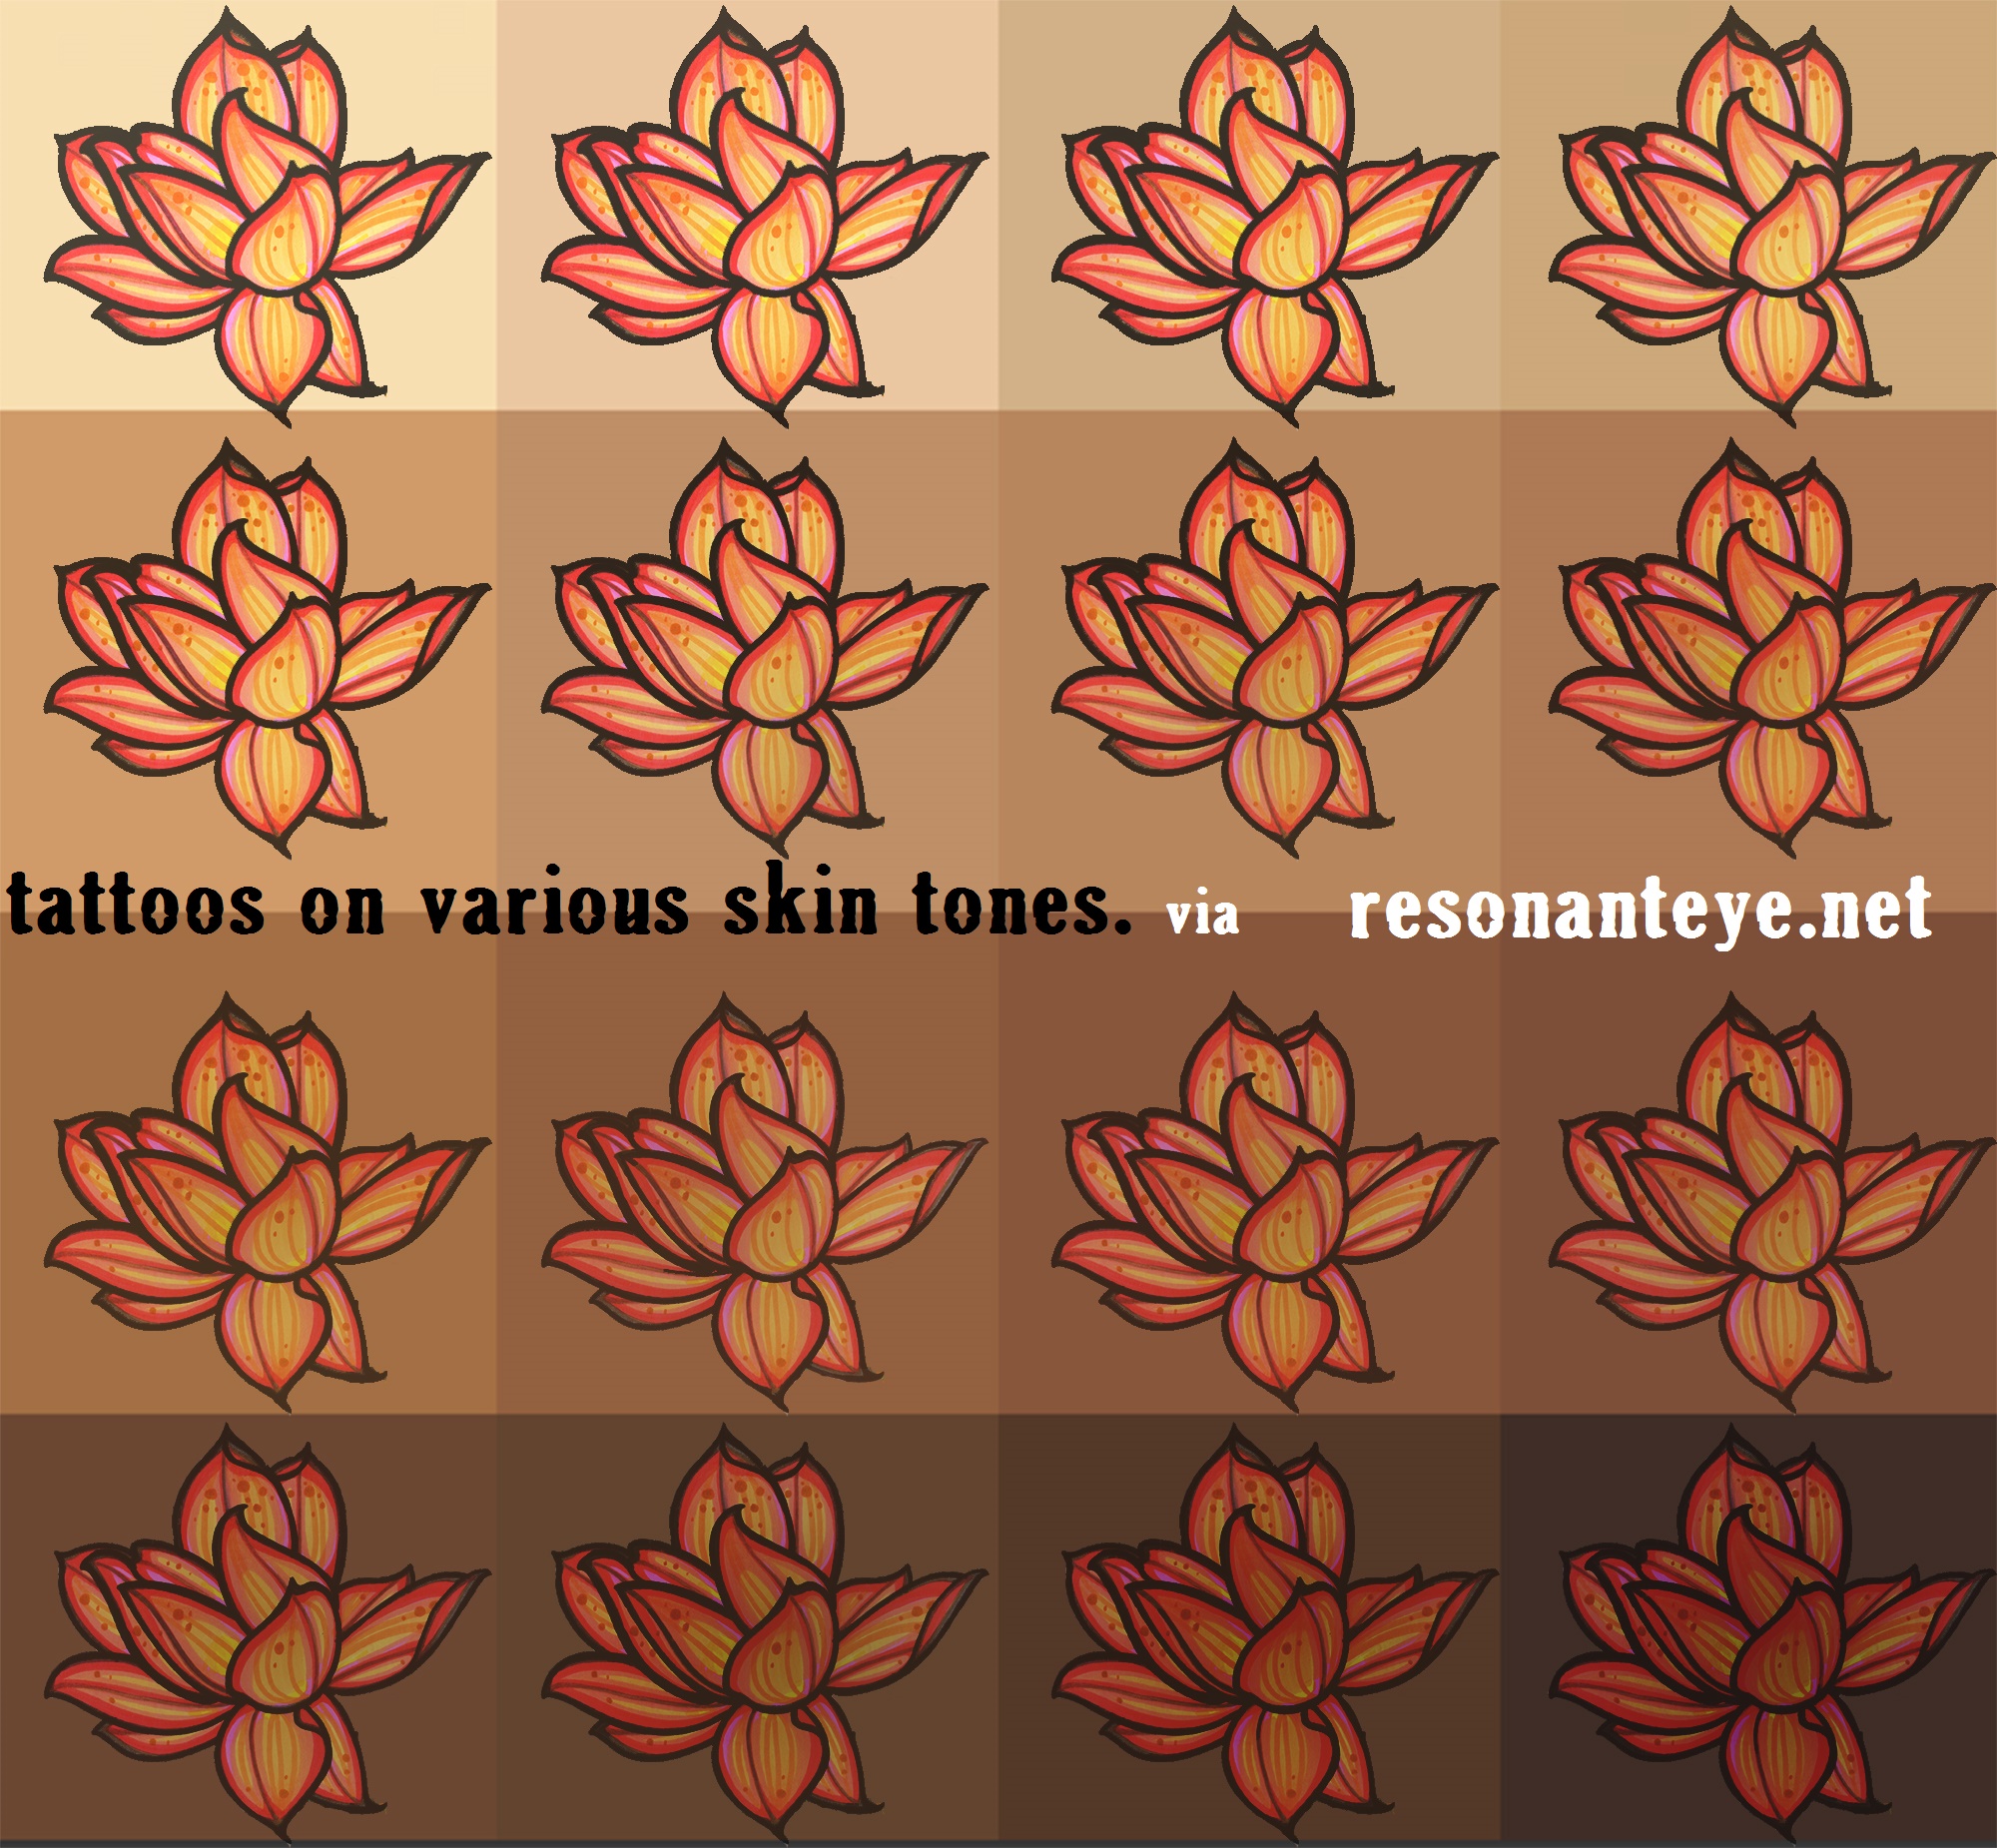 tattooing on darker, or uneven, skin tones - resonanteye